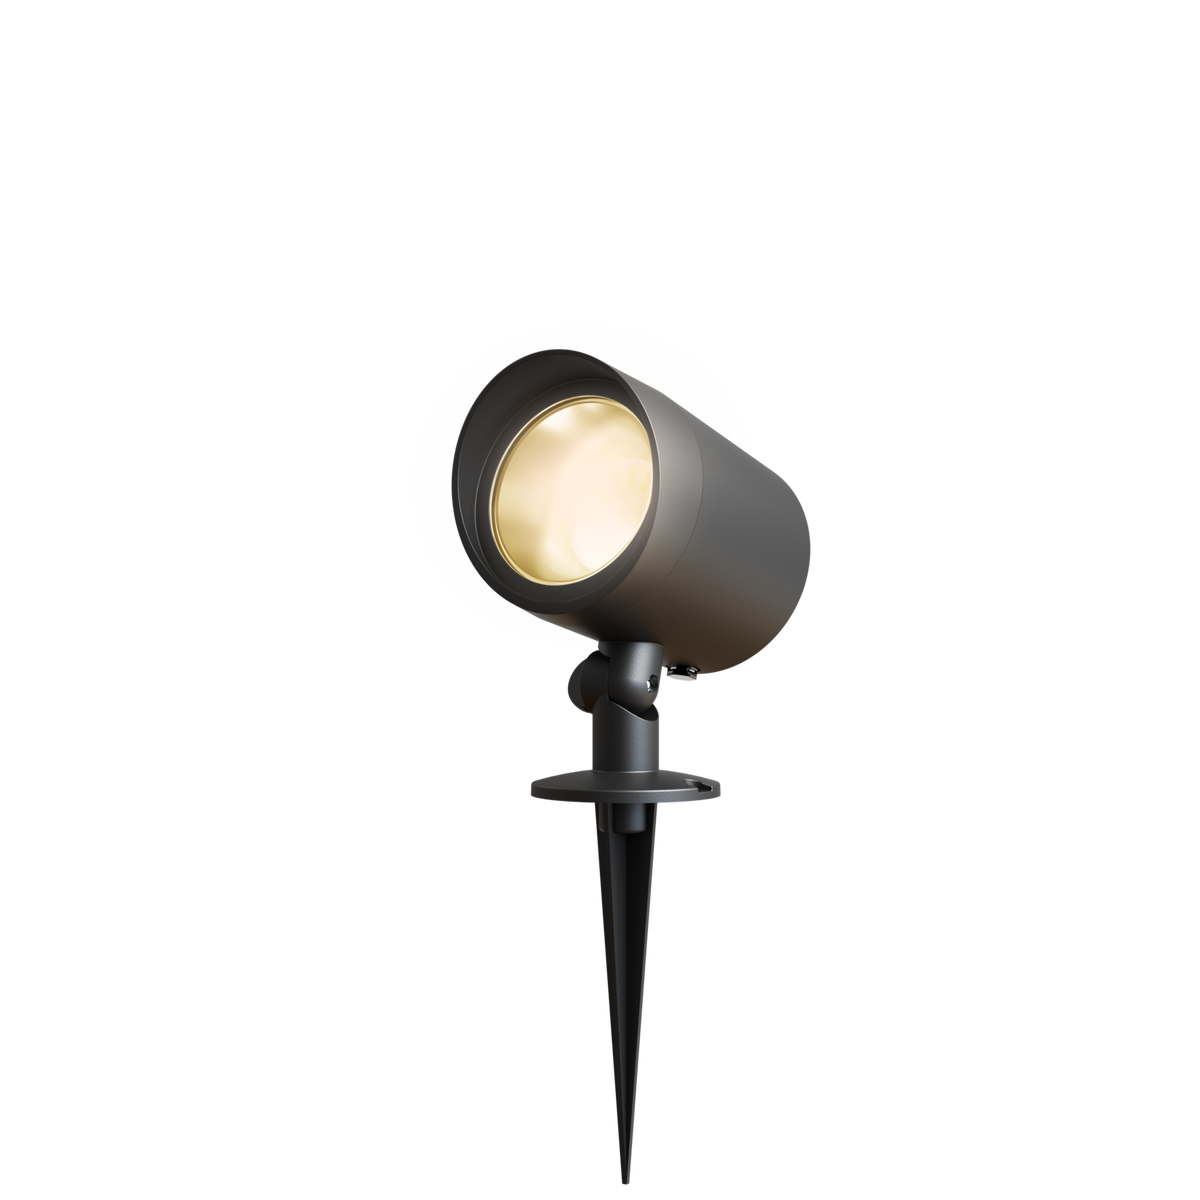 Calex LED Garden Spot Imola - Garden Lighting - Black - Warm White Light - 7W